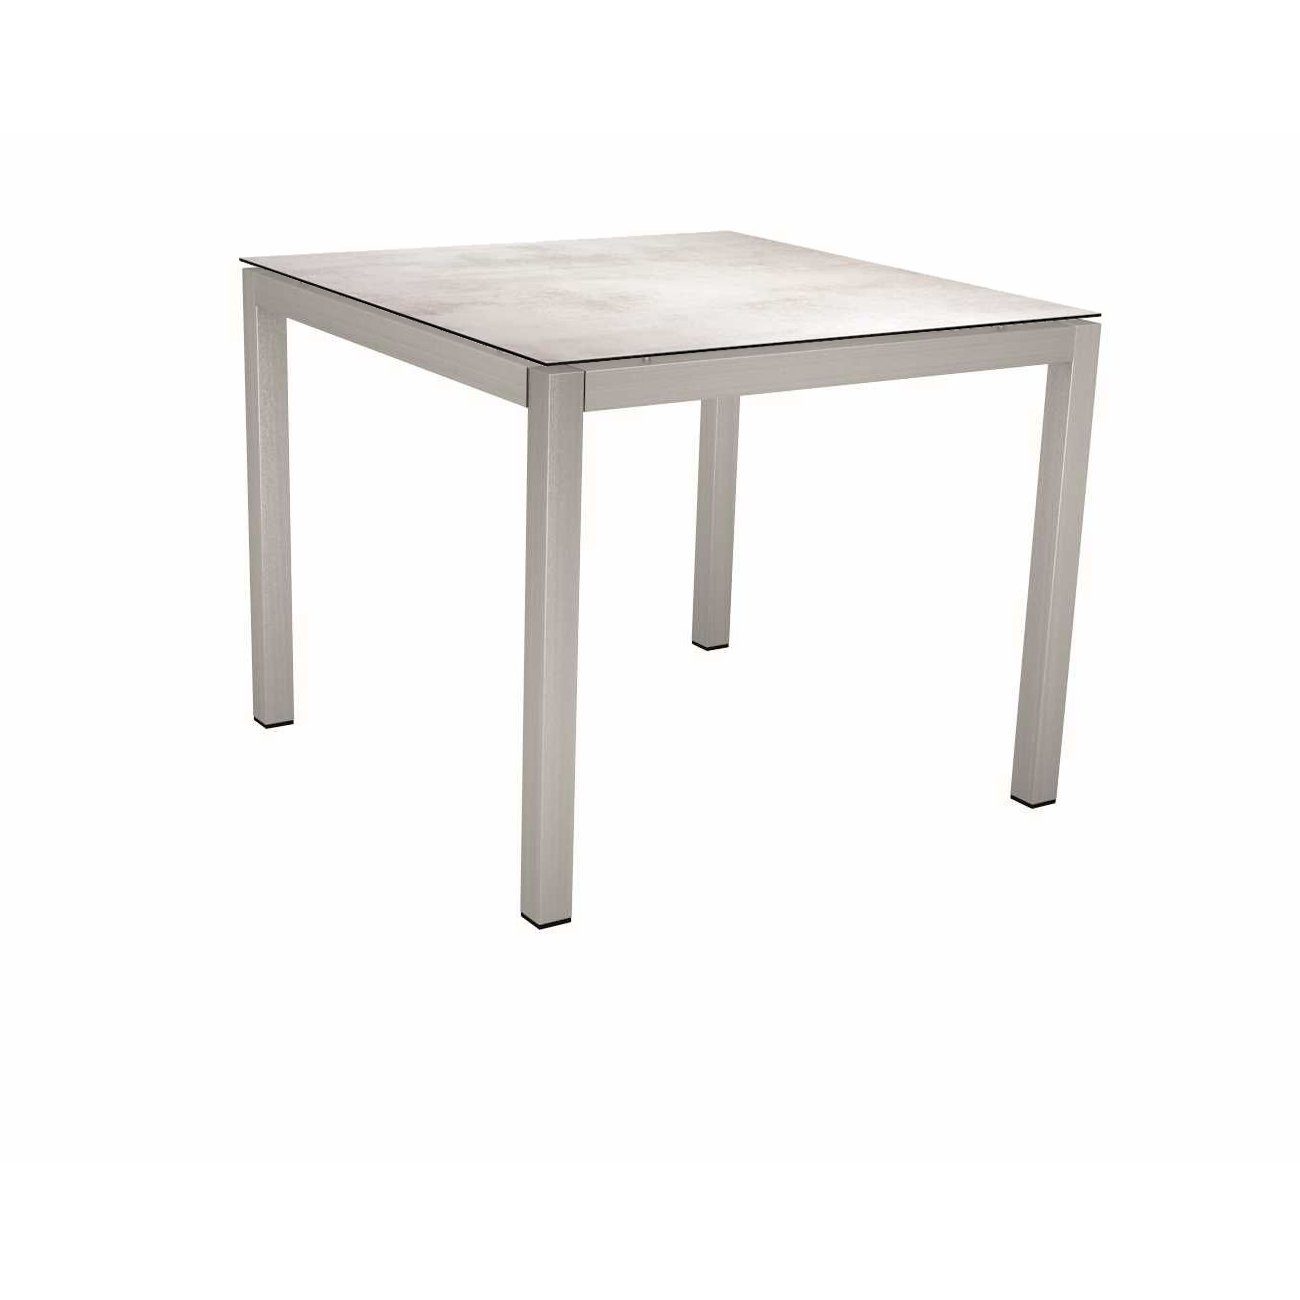 Stern Tischsystem, Gestell Edelstahl Vierkantrohr, Tischplatte HPL Zement hell, 80x80 cm